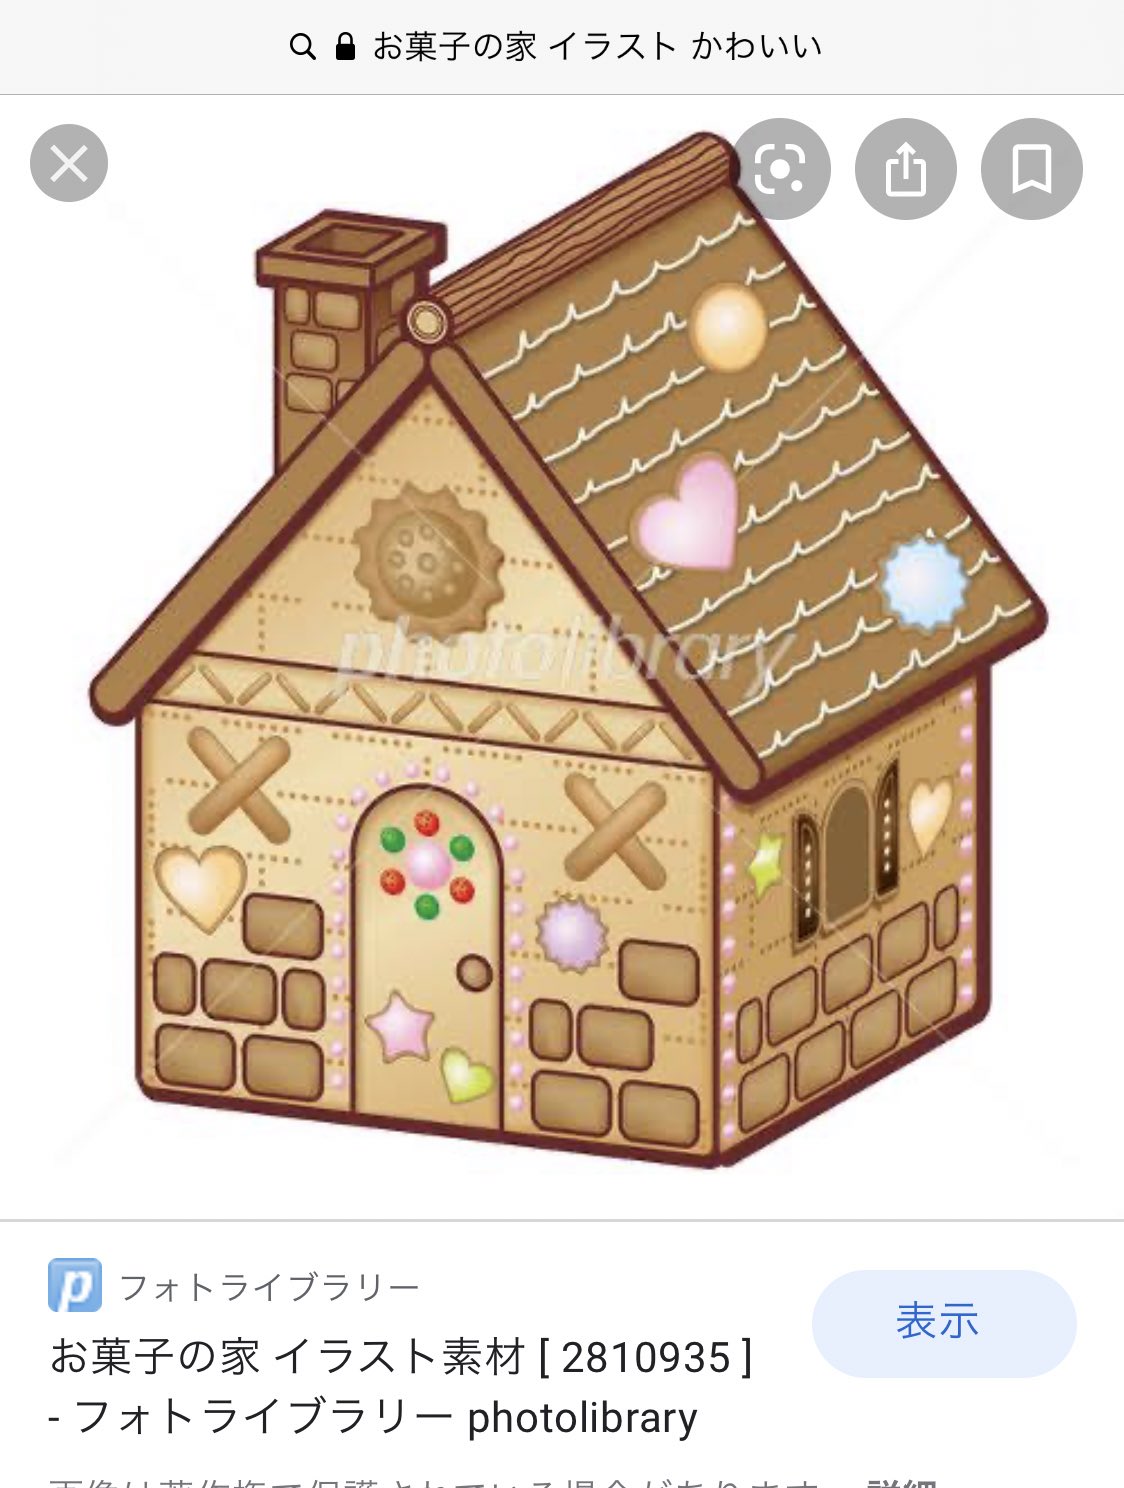 تويتر しめろでぃ على تويتر お菓子の家も お菓子の家 イラスト かわいい で検索してからアレンジ加えてるのまじで可愛いな T Co Xpbobgem1p